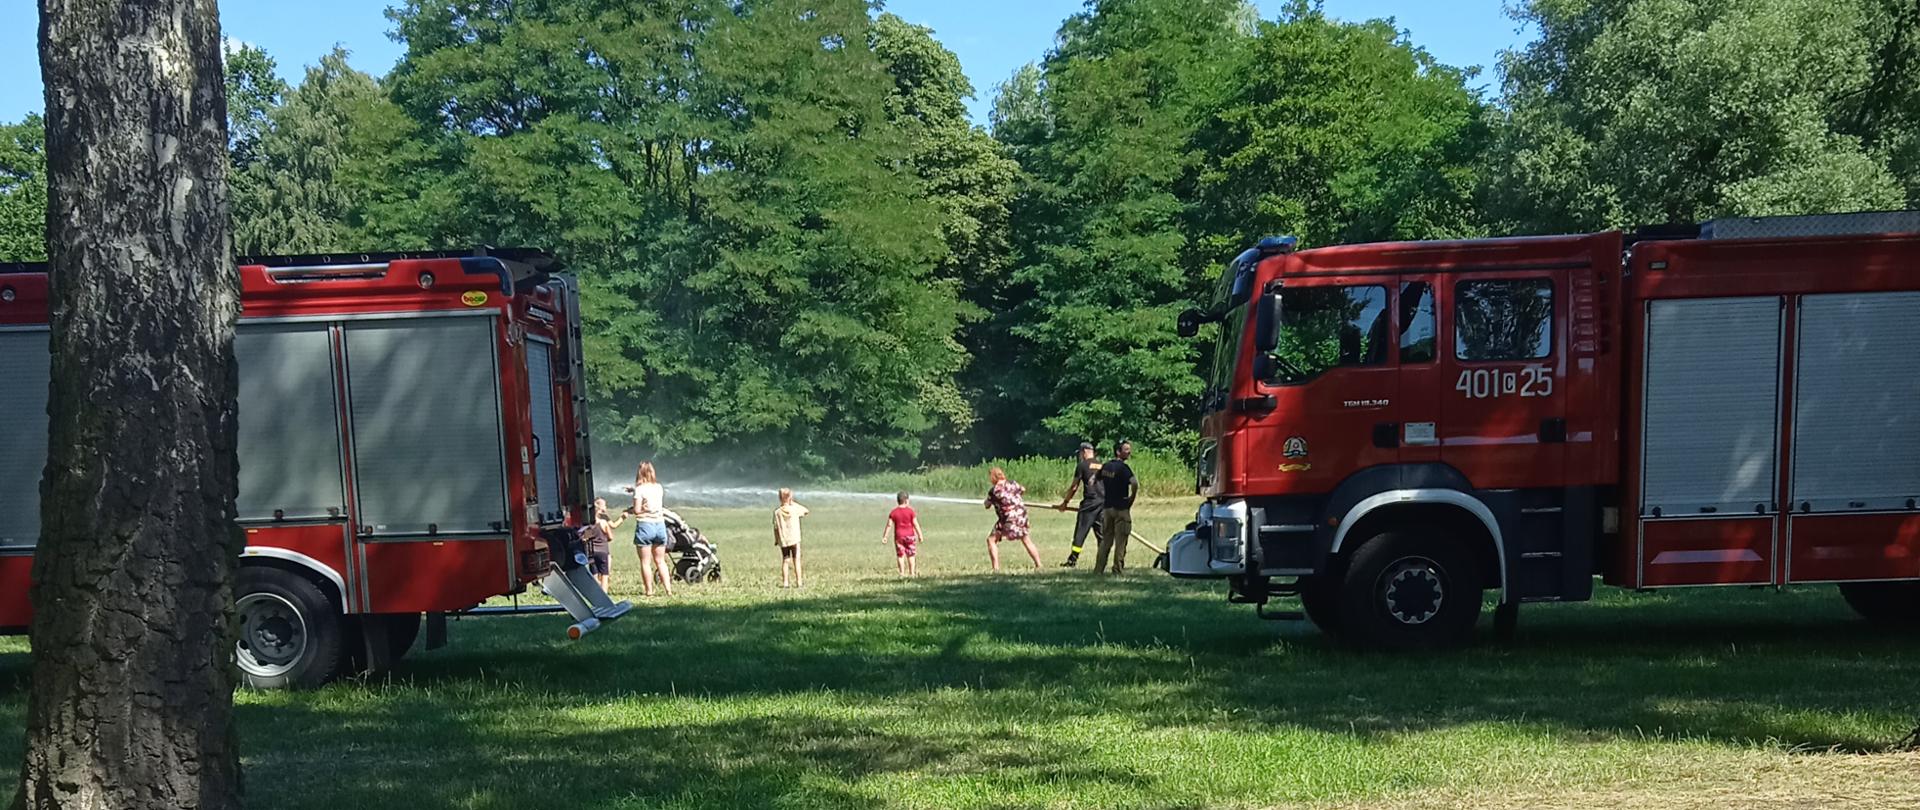 Na zdjęciu widoczny jest średni wóz ratowniczo- gaśniczy z JRG Aleksandrów Kujawski w trakcie prezentacji sprzętu przez strażaków. W kabinie pojazdu i przy pojeździe widoczne są zwiedzające dzieci. W tle widać park